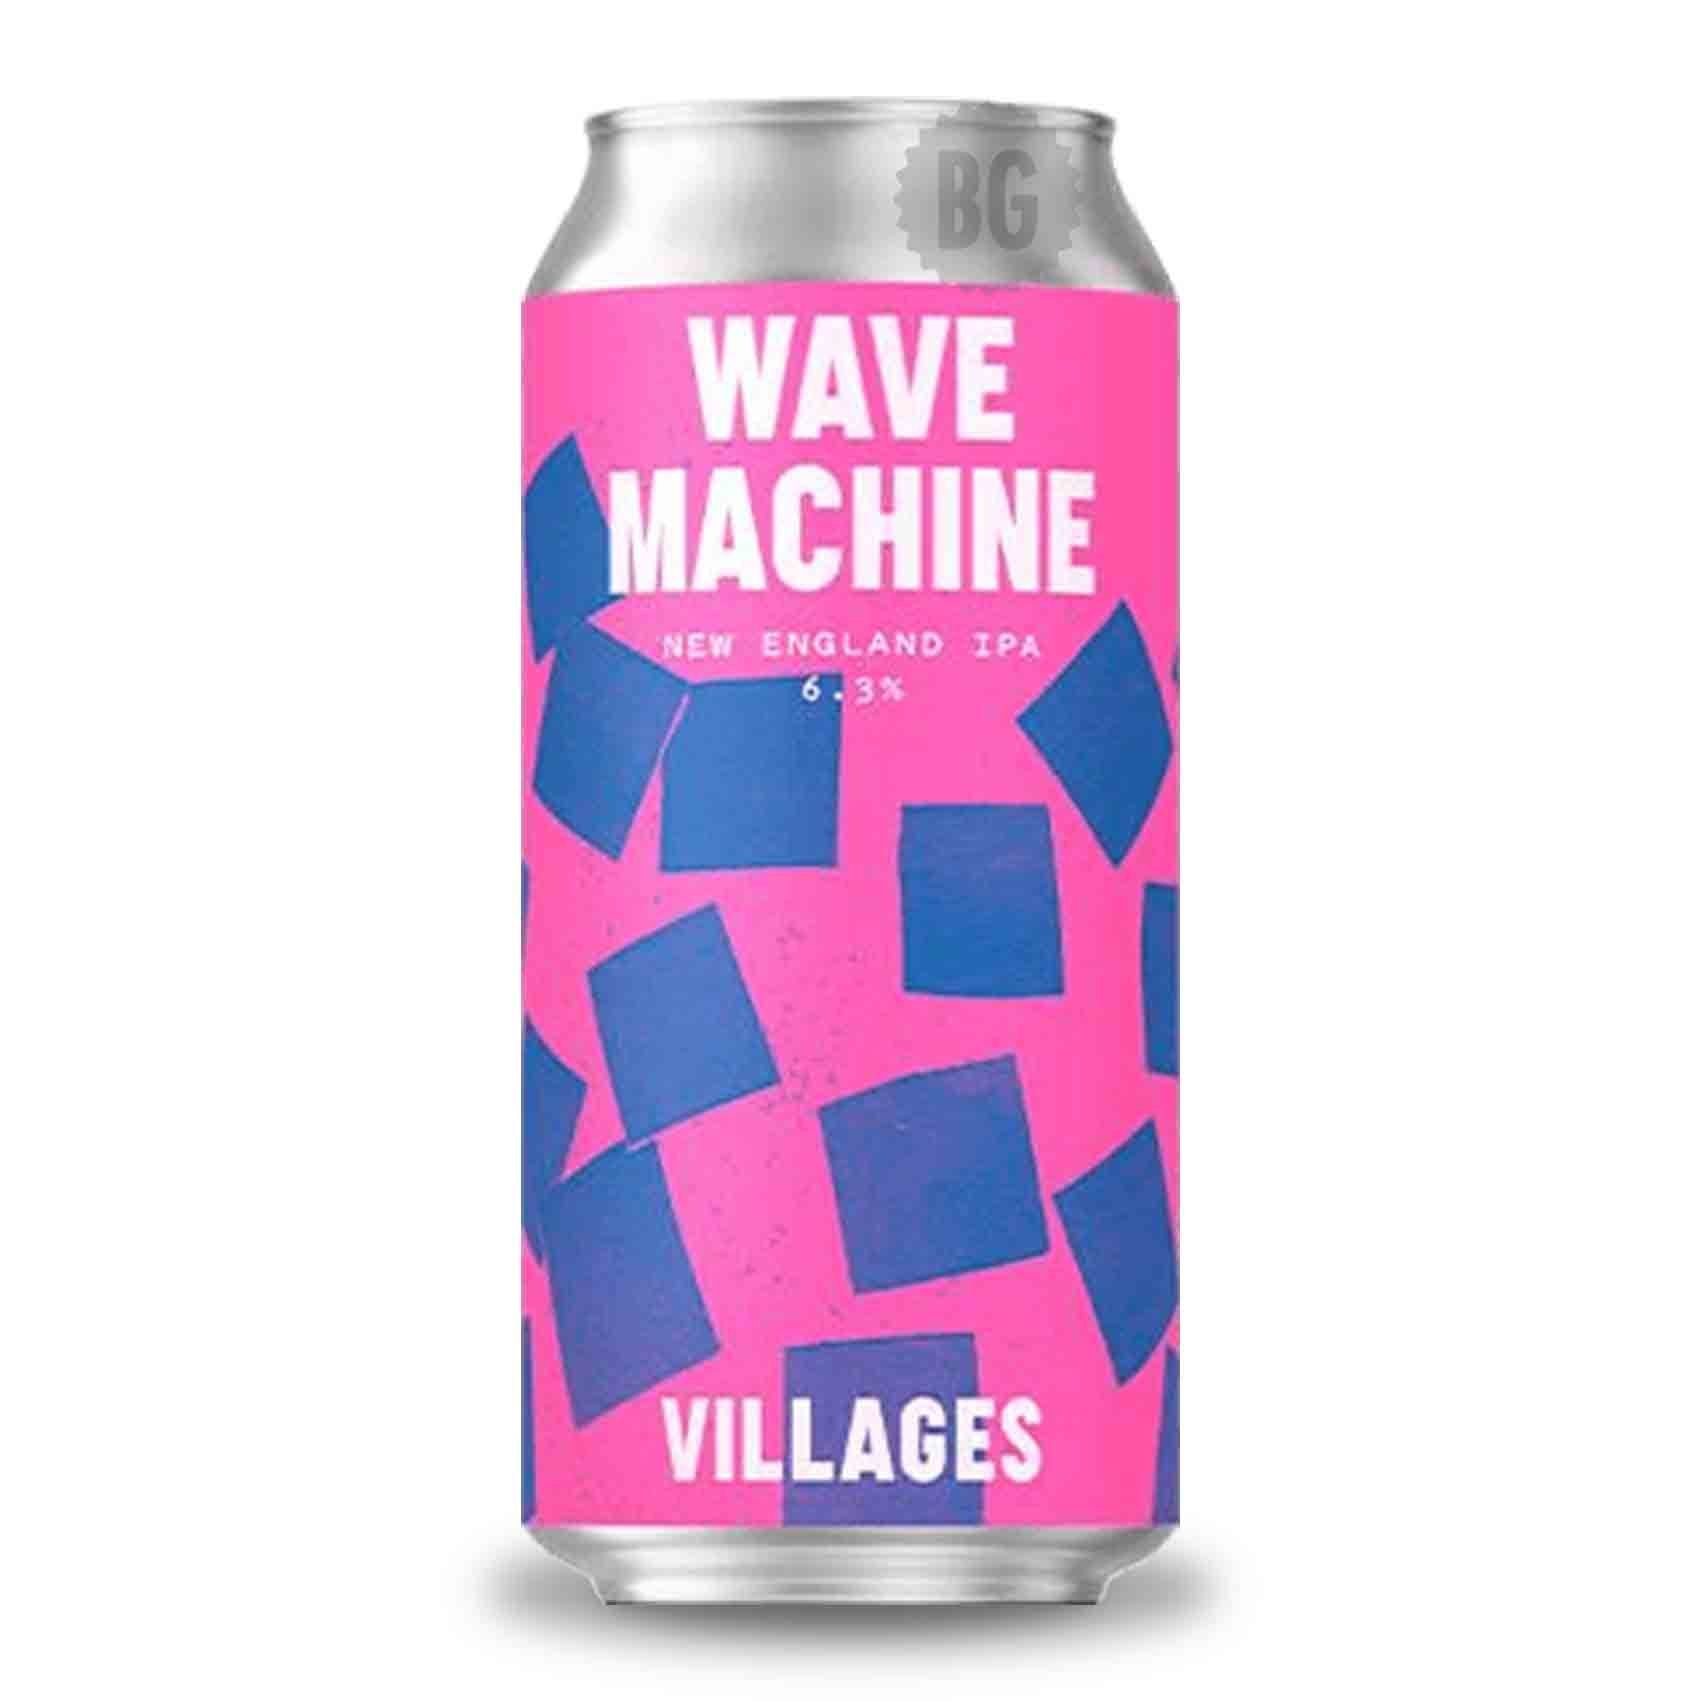 Wave Machine NE IPA 6.3% (440ml)